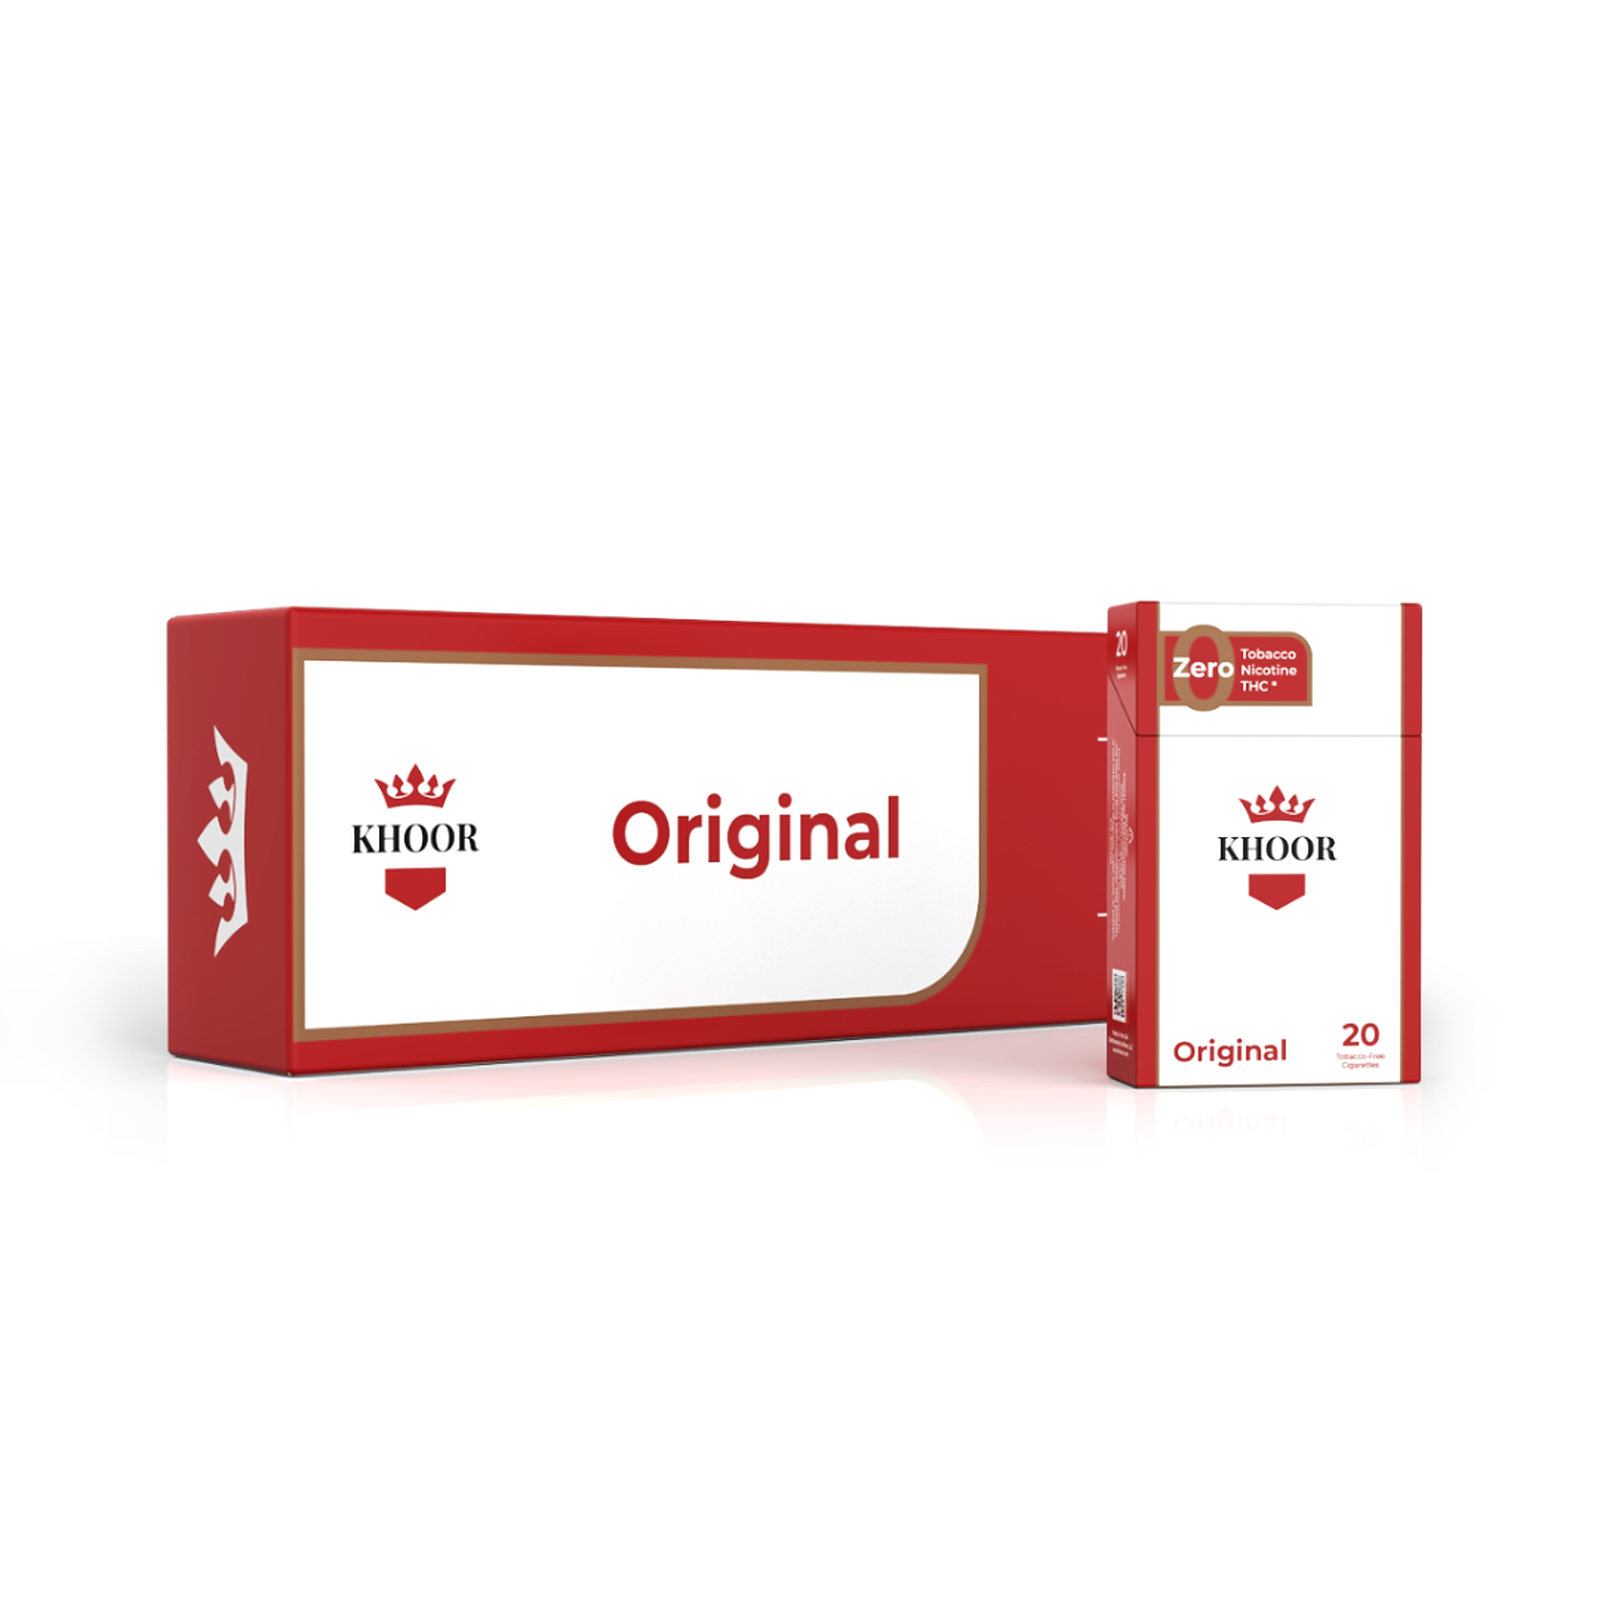 Khoor Original Carton (10 packs)